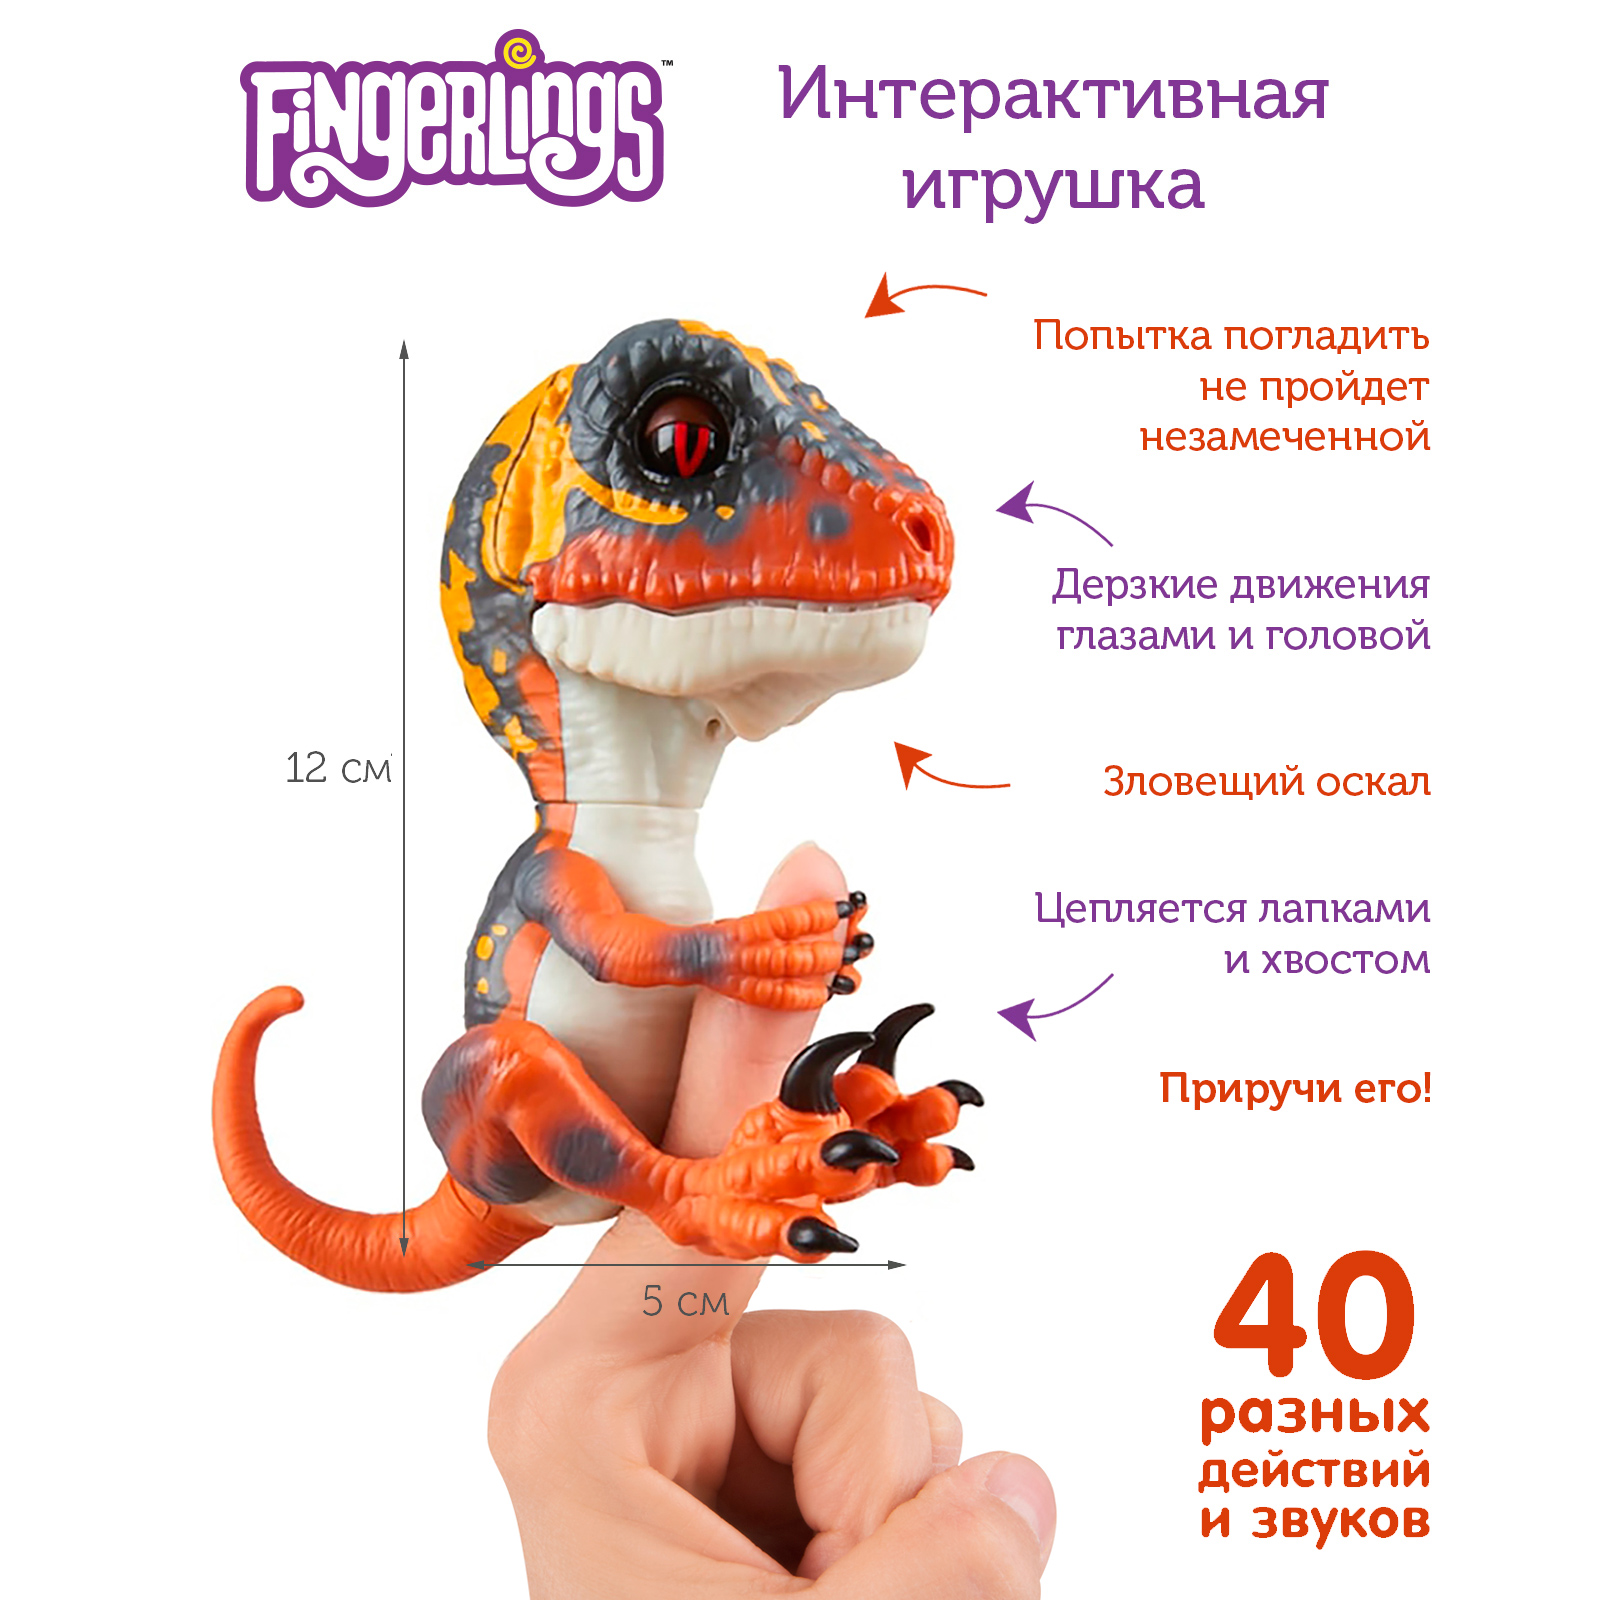 Интерактивная игрушка Fingerlings динозавр Блейз зеленый с оранжевым 12 см - фото 2